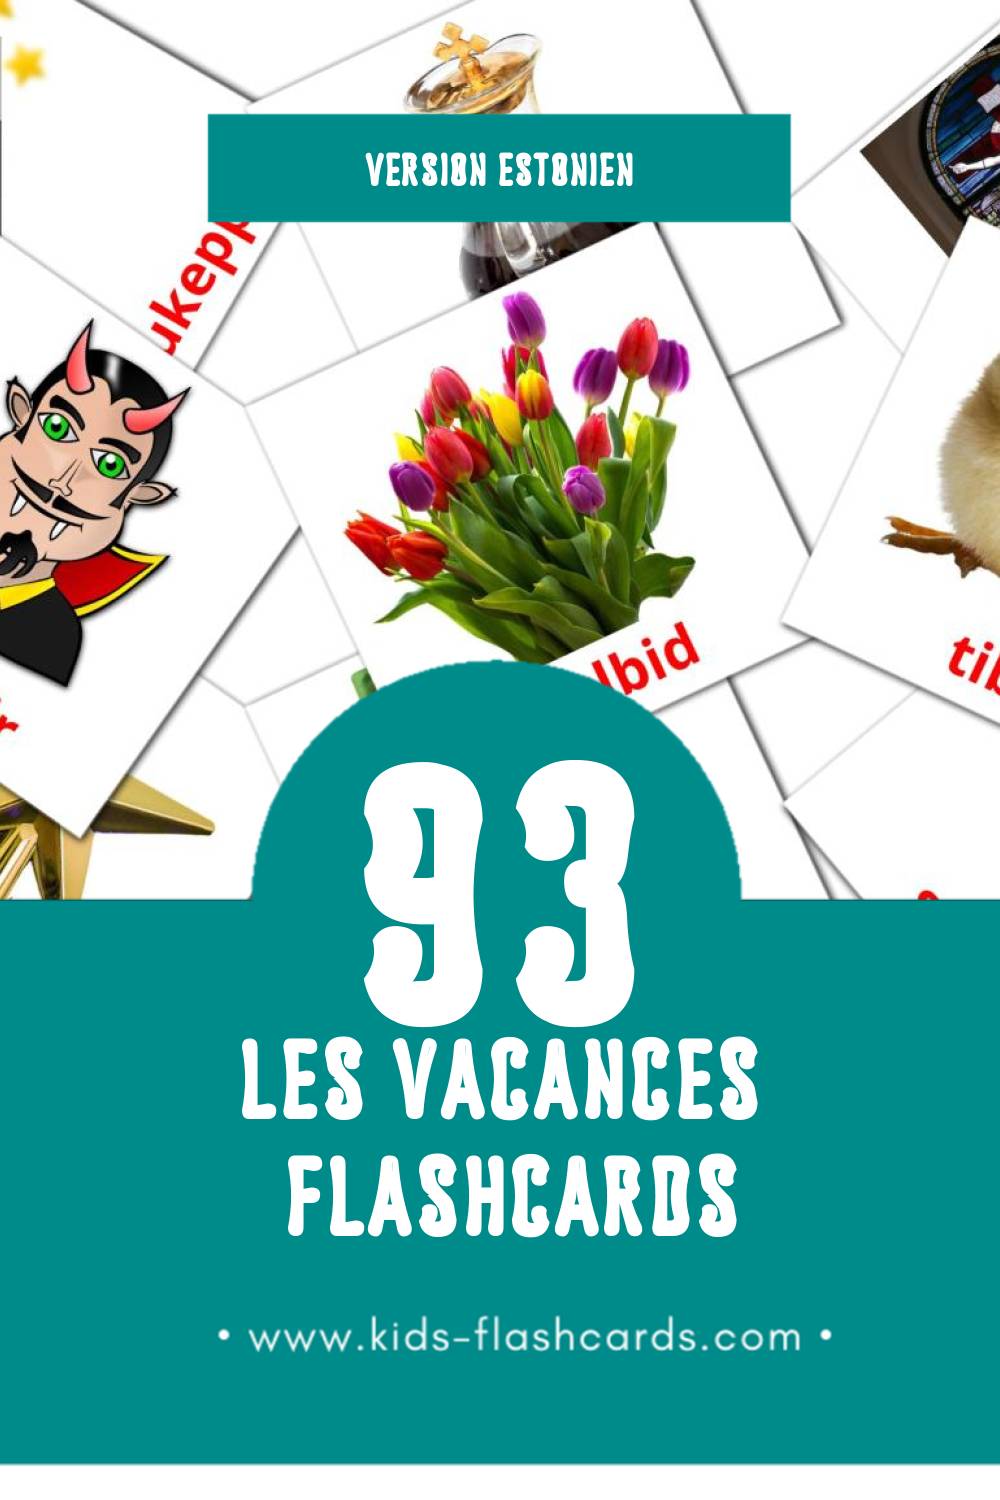 Flashcards Visual pühad pour les tout-petits (44 cartes en Estonien)